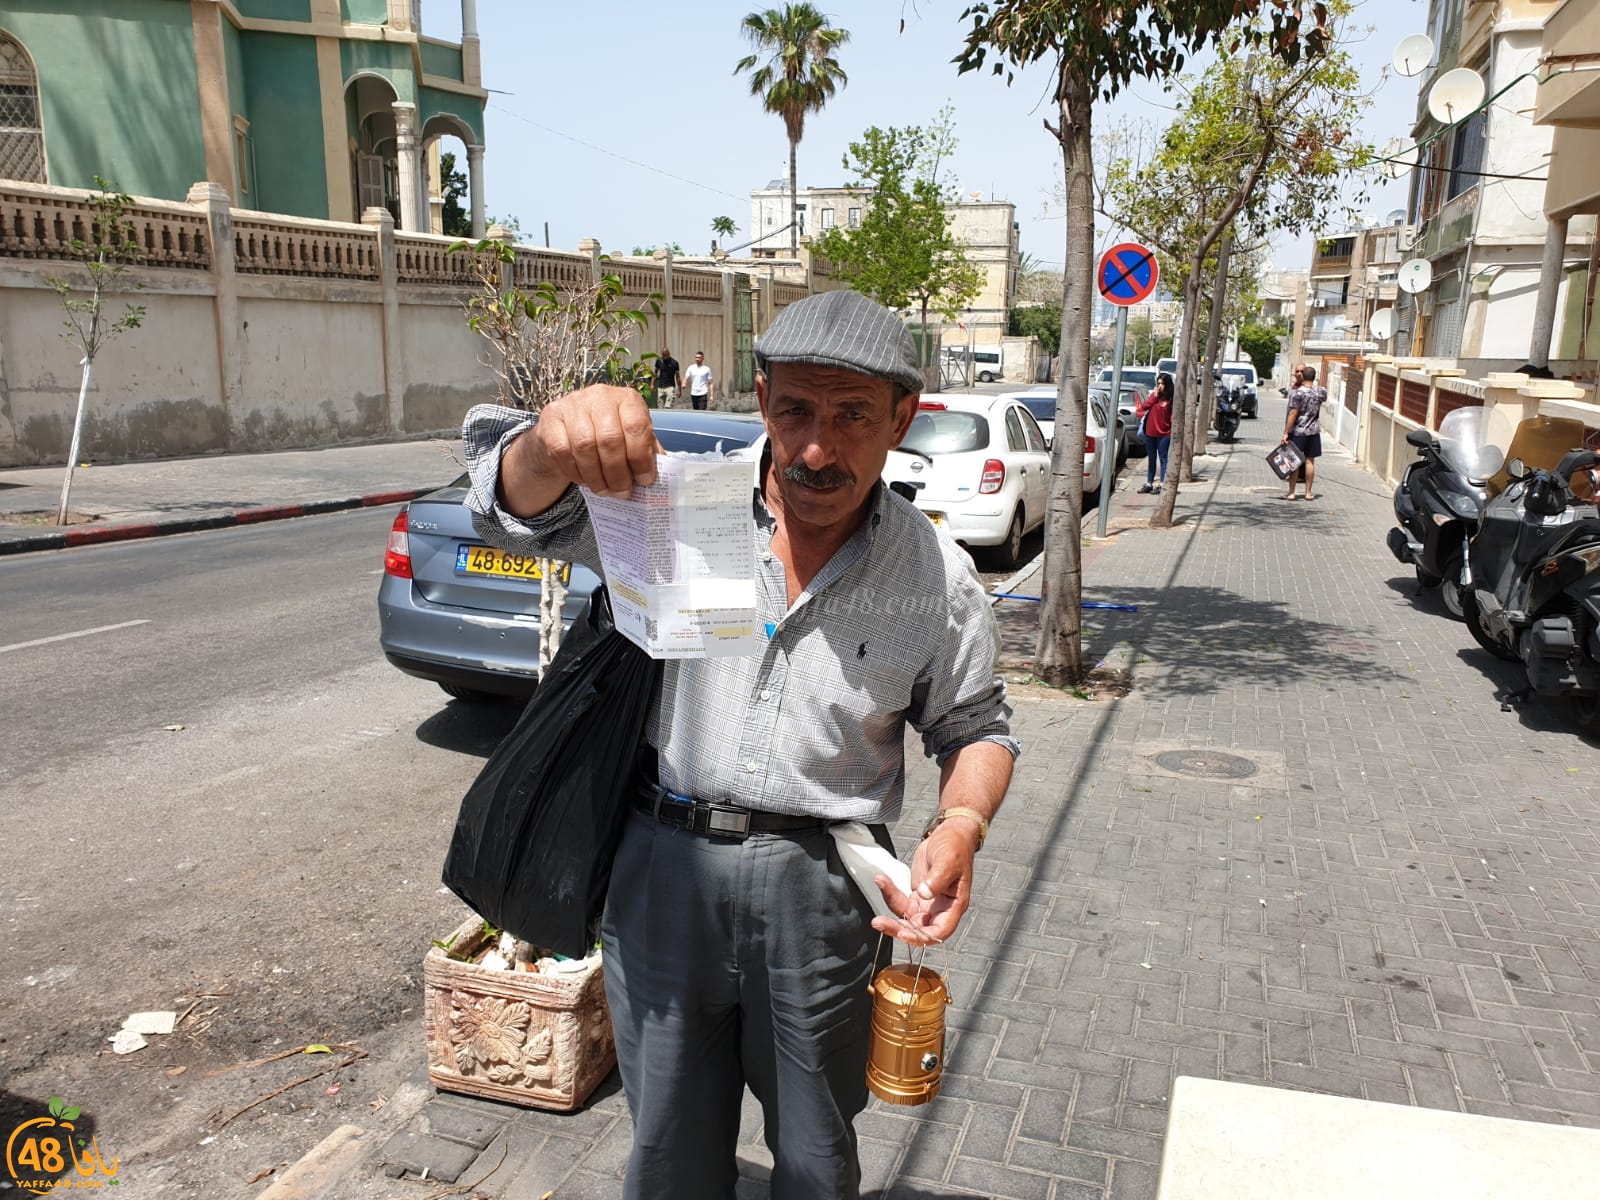 جاء من الخليل ليسترزق في يافا ببيع الفوانيس فخالفته البلدية بقيمة 475 شيكل